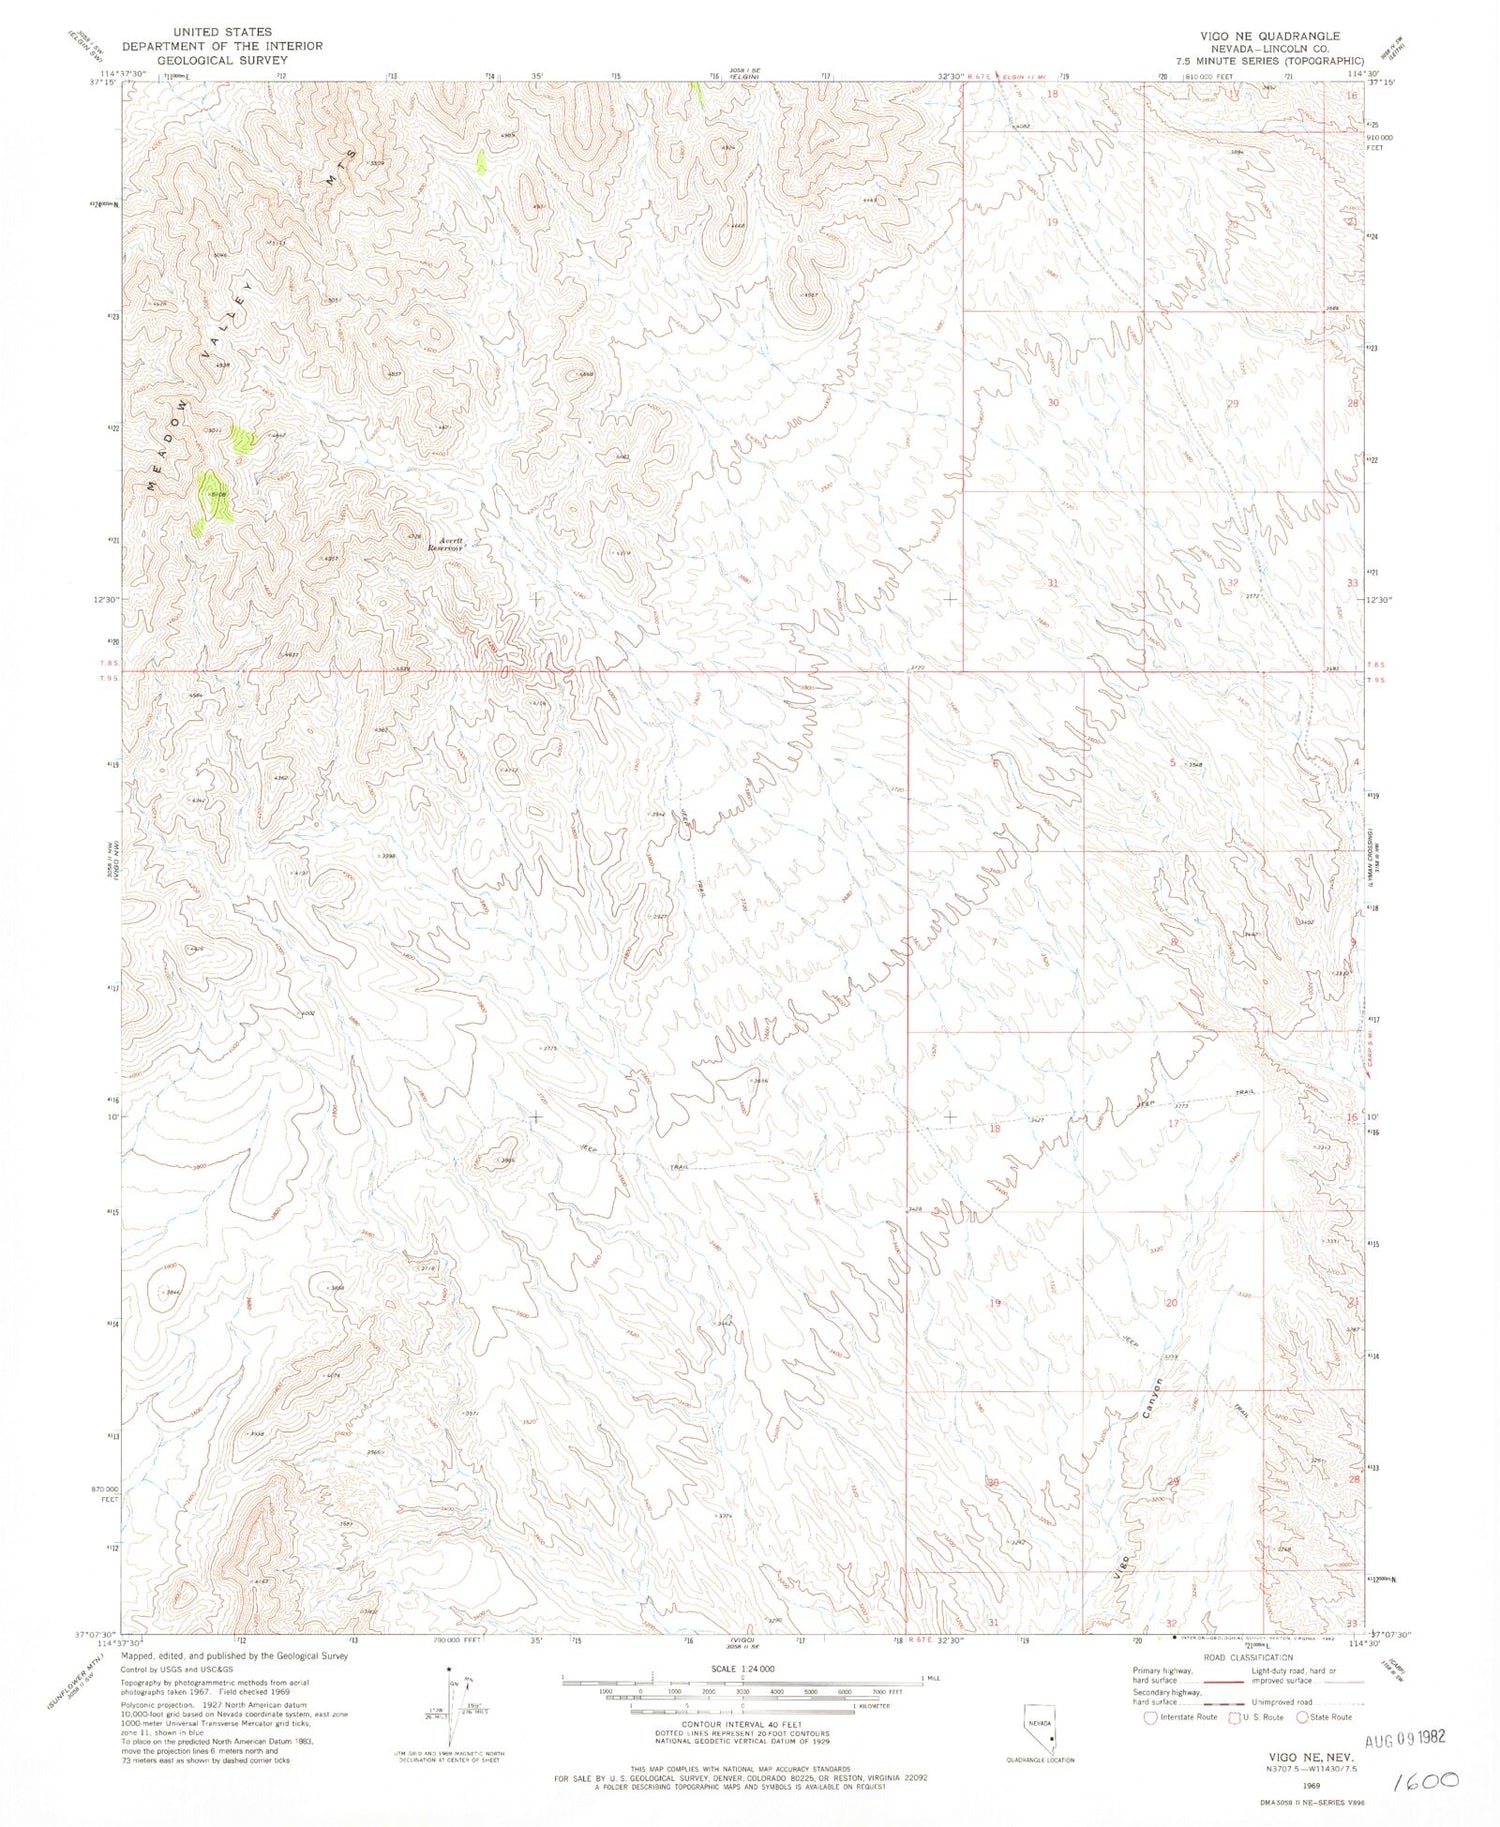 Classic USGS Vigo NE Nevada 7.5'x7.5' Topo Map Image